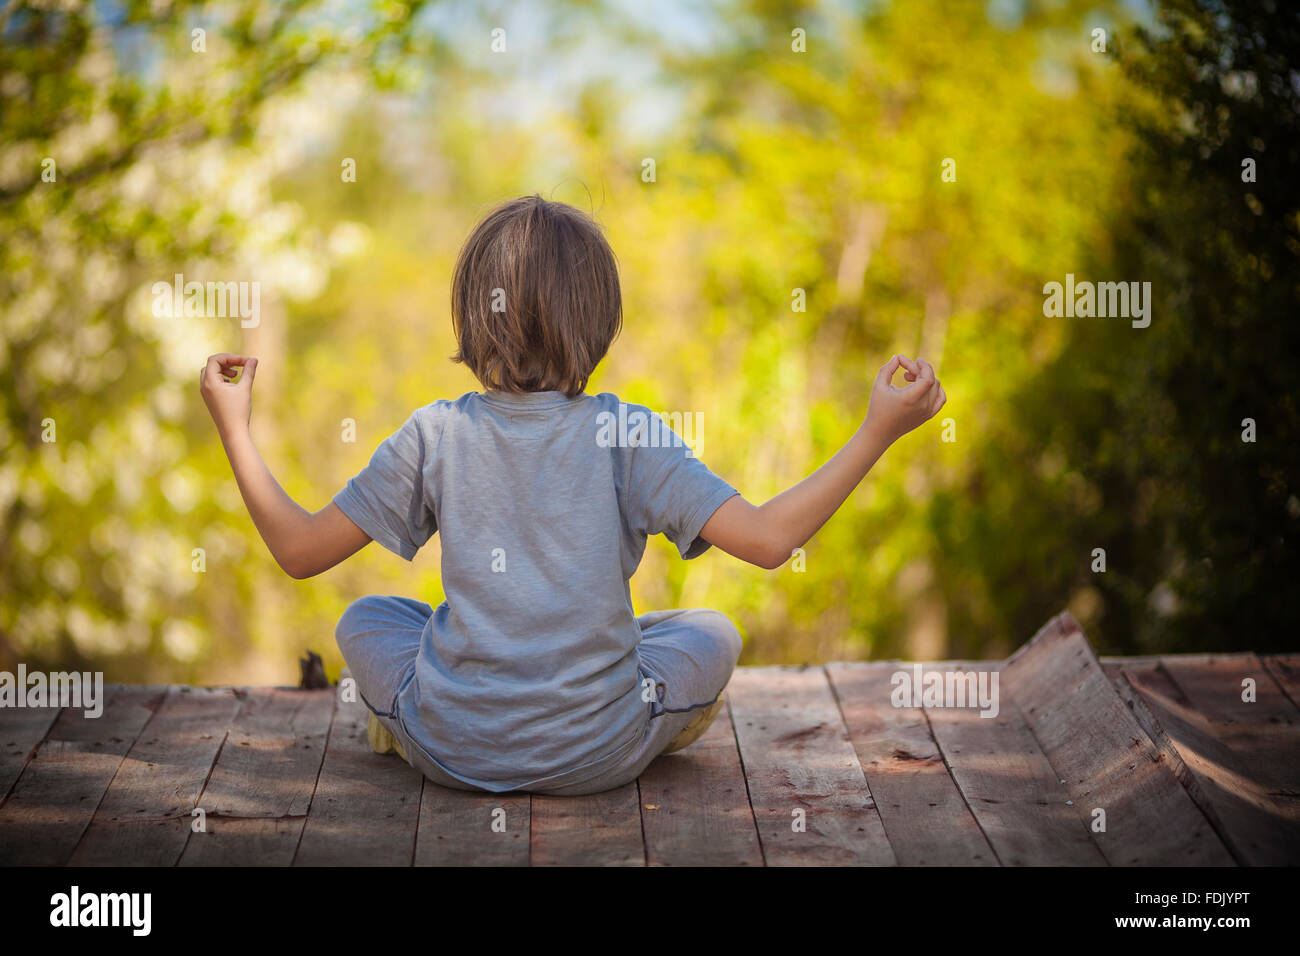 Vue arrière d'un garçon assis sur une terrasse en bois en méditant Banque D'Images